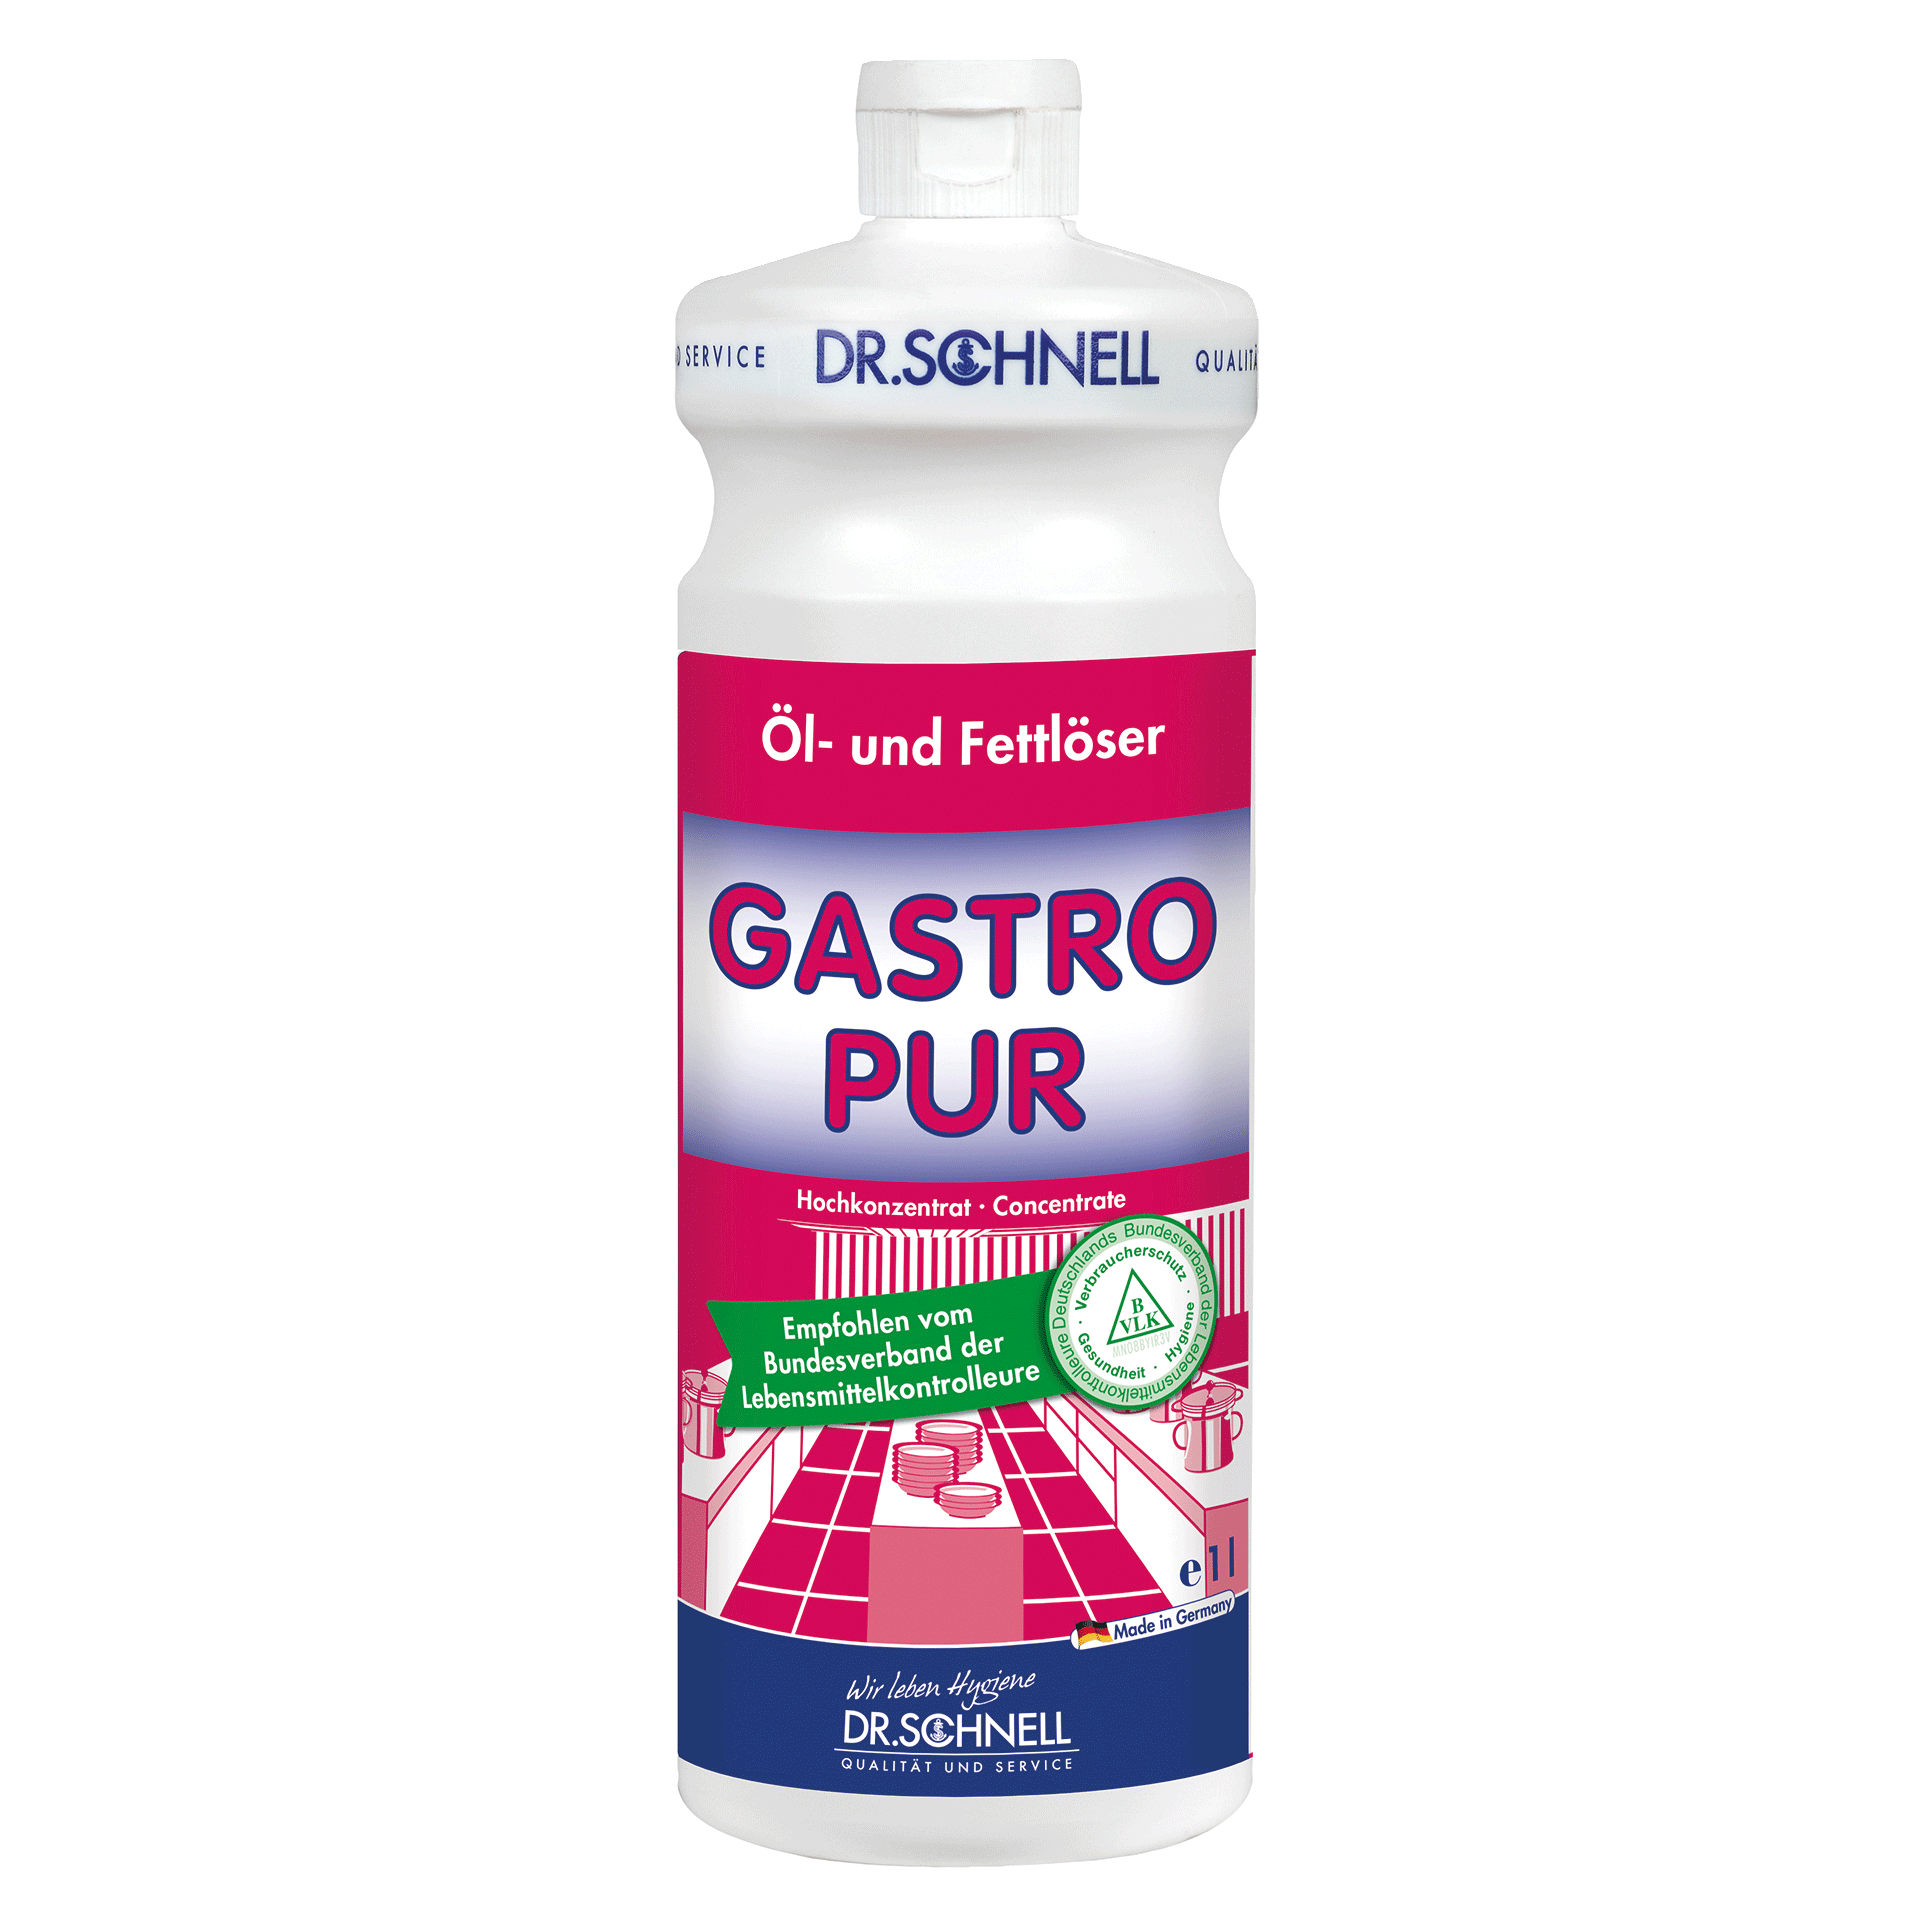 Dr. Schnell Gastro Pur Fettlöser, 1 Liter Flasche